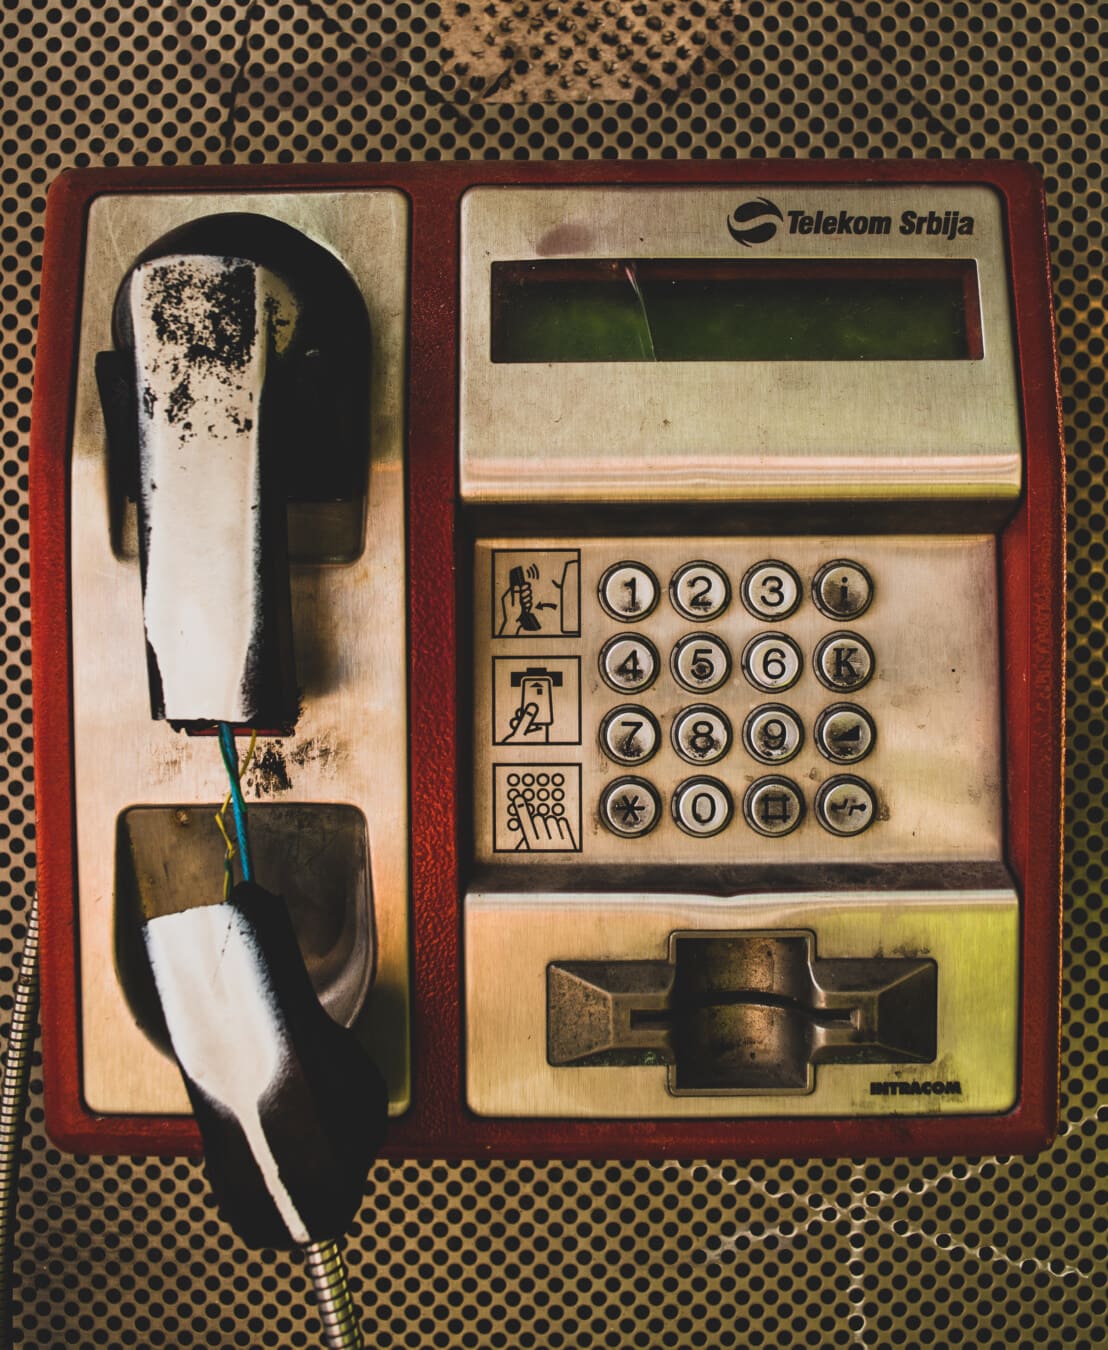 Телефон, телефонная линия, классик, старый стиль, распад, марочный, ностальгия, старый, антиквариат, Услуги